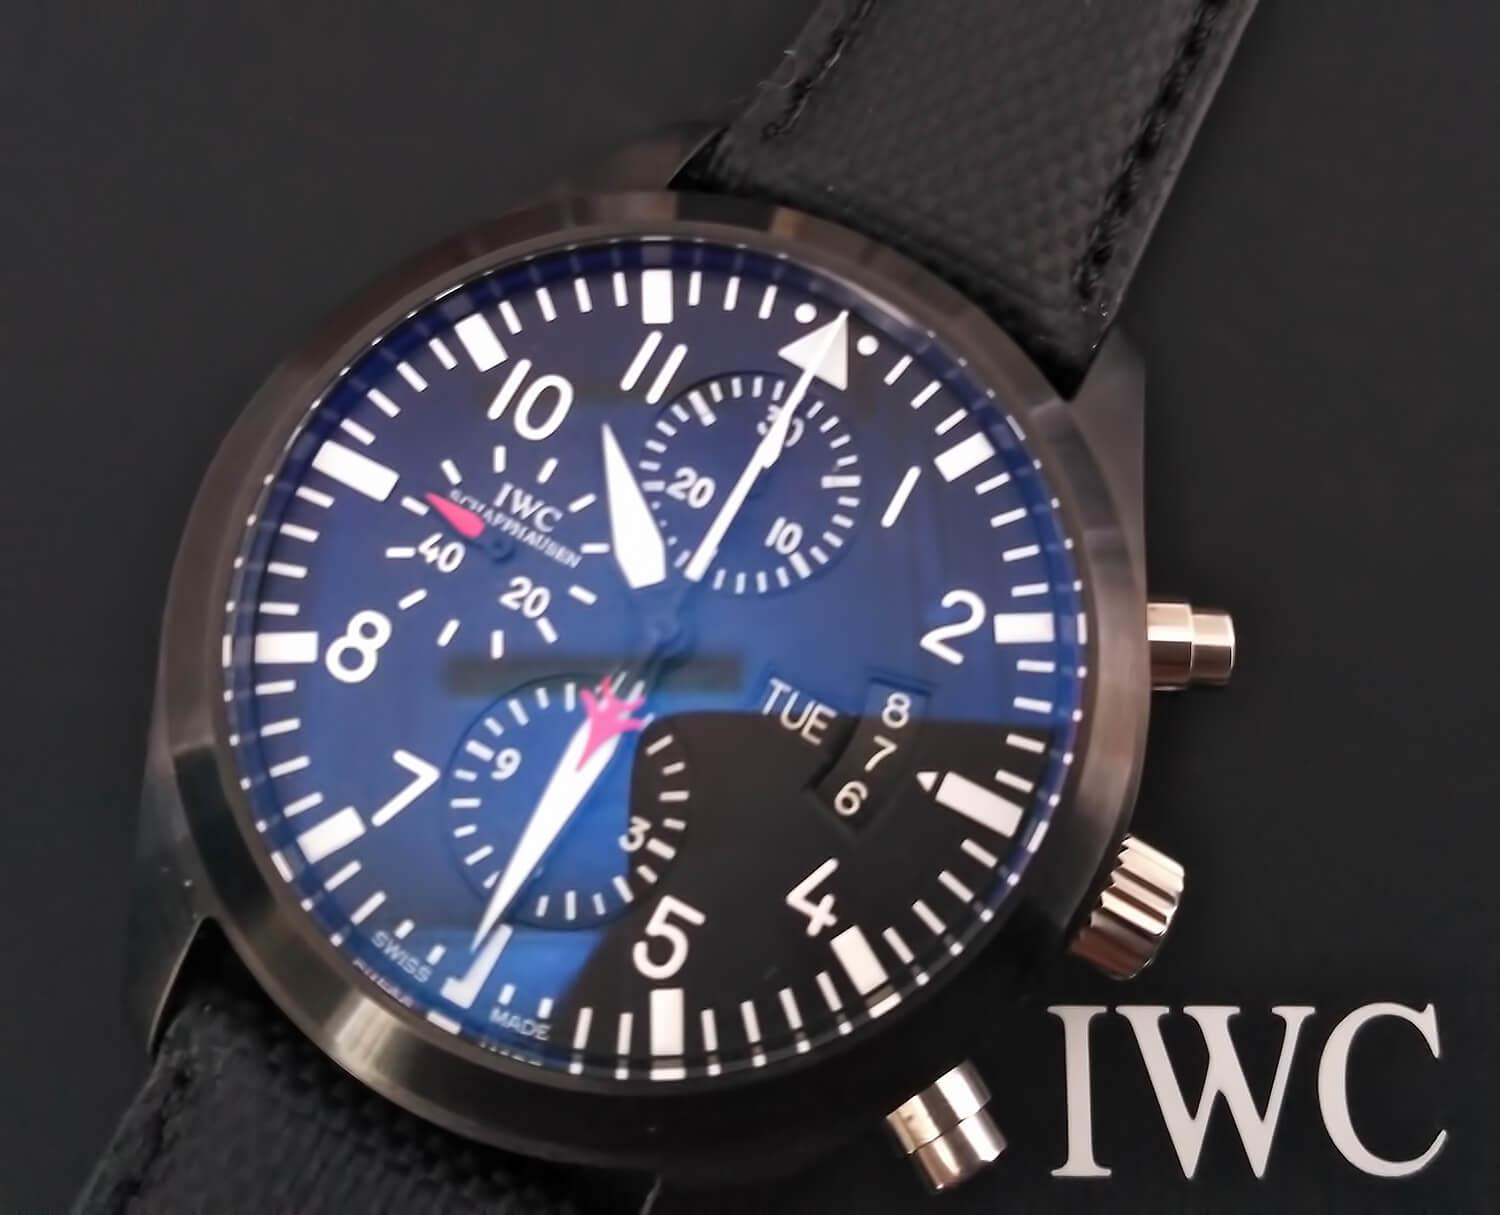 С начала выпуска в 1936 г. часам коллекции Pilot’s Watch присущ особый стиль дизайна, сближающий хронометры с бортовой панелью самолетов